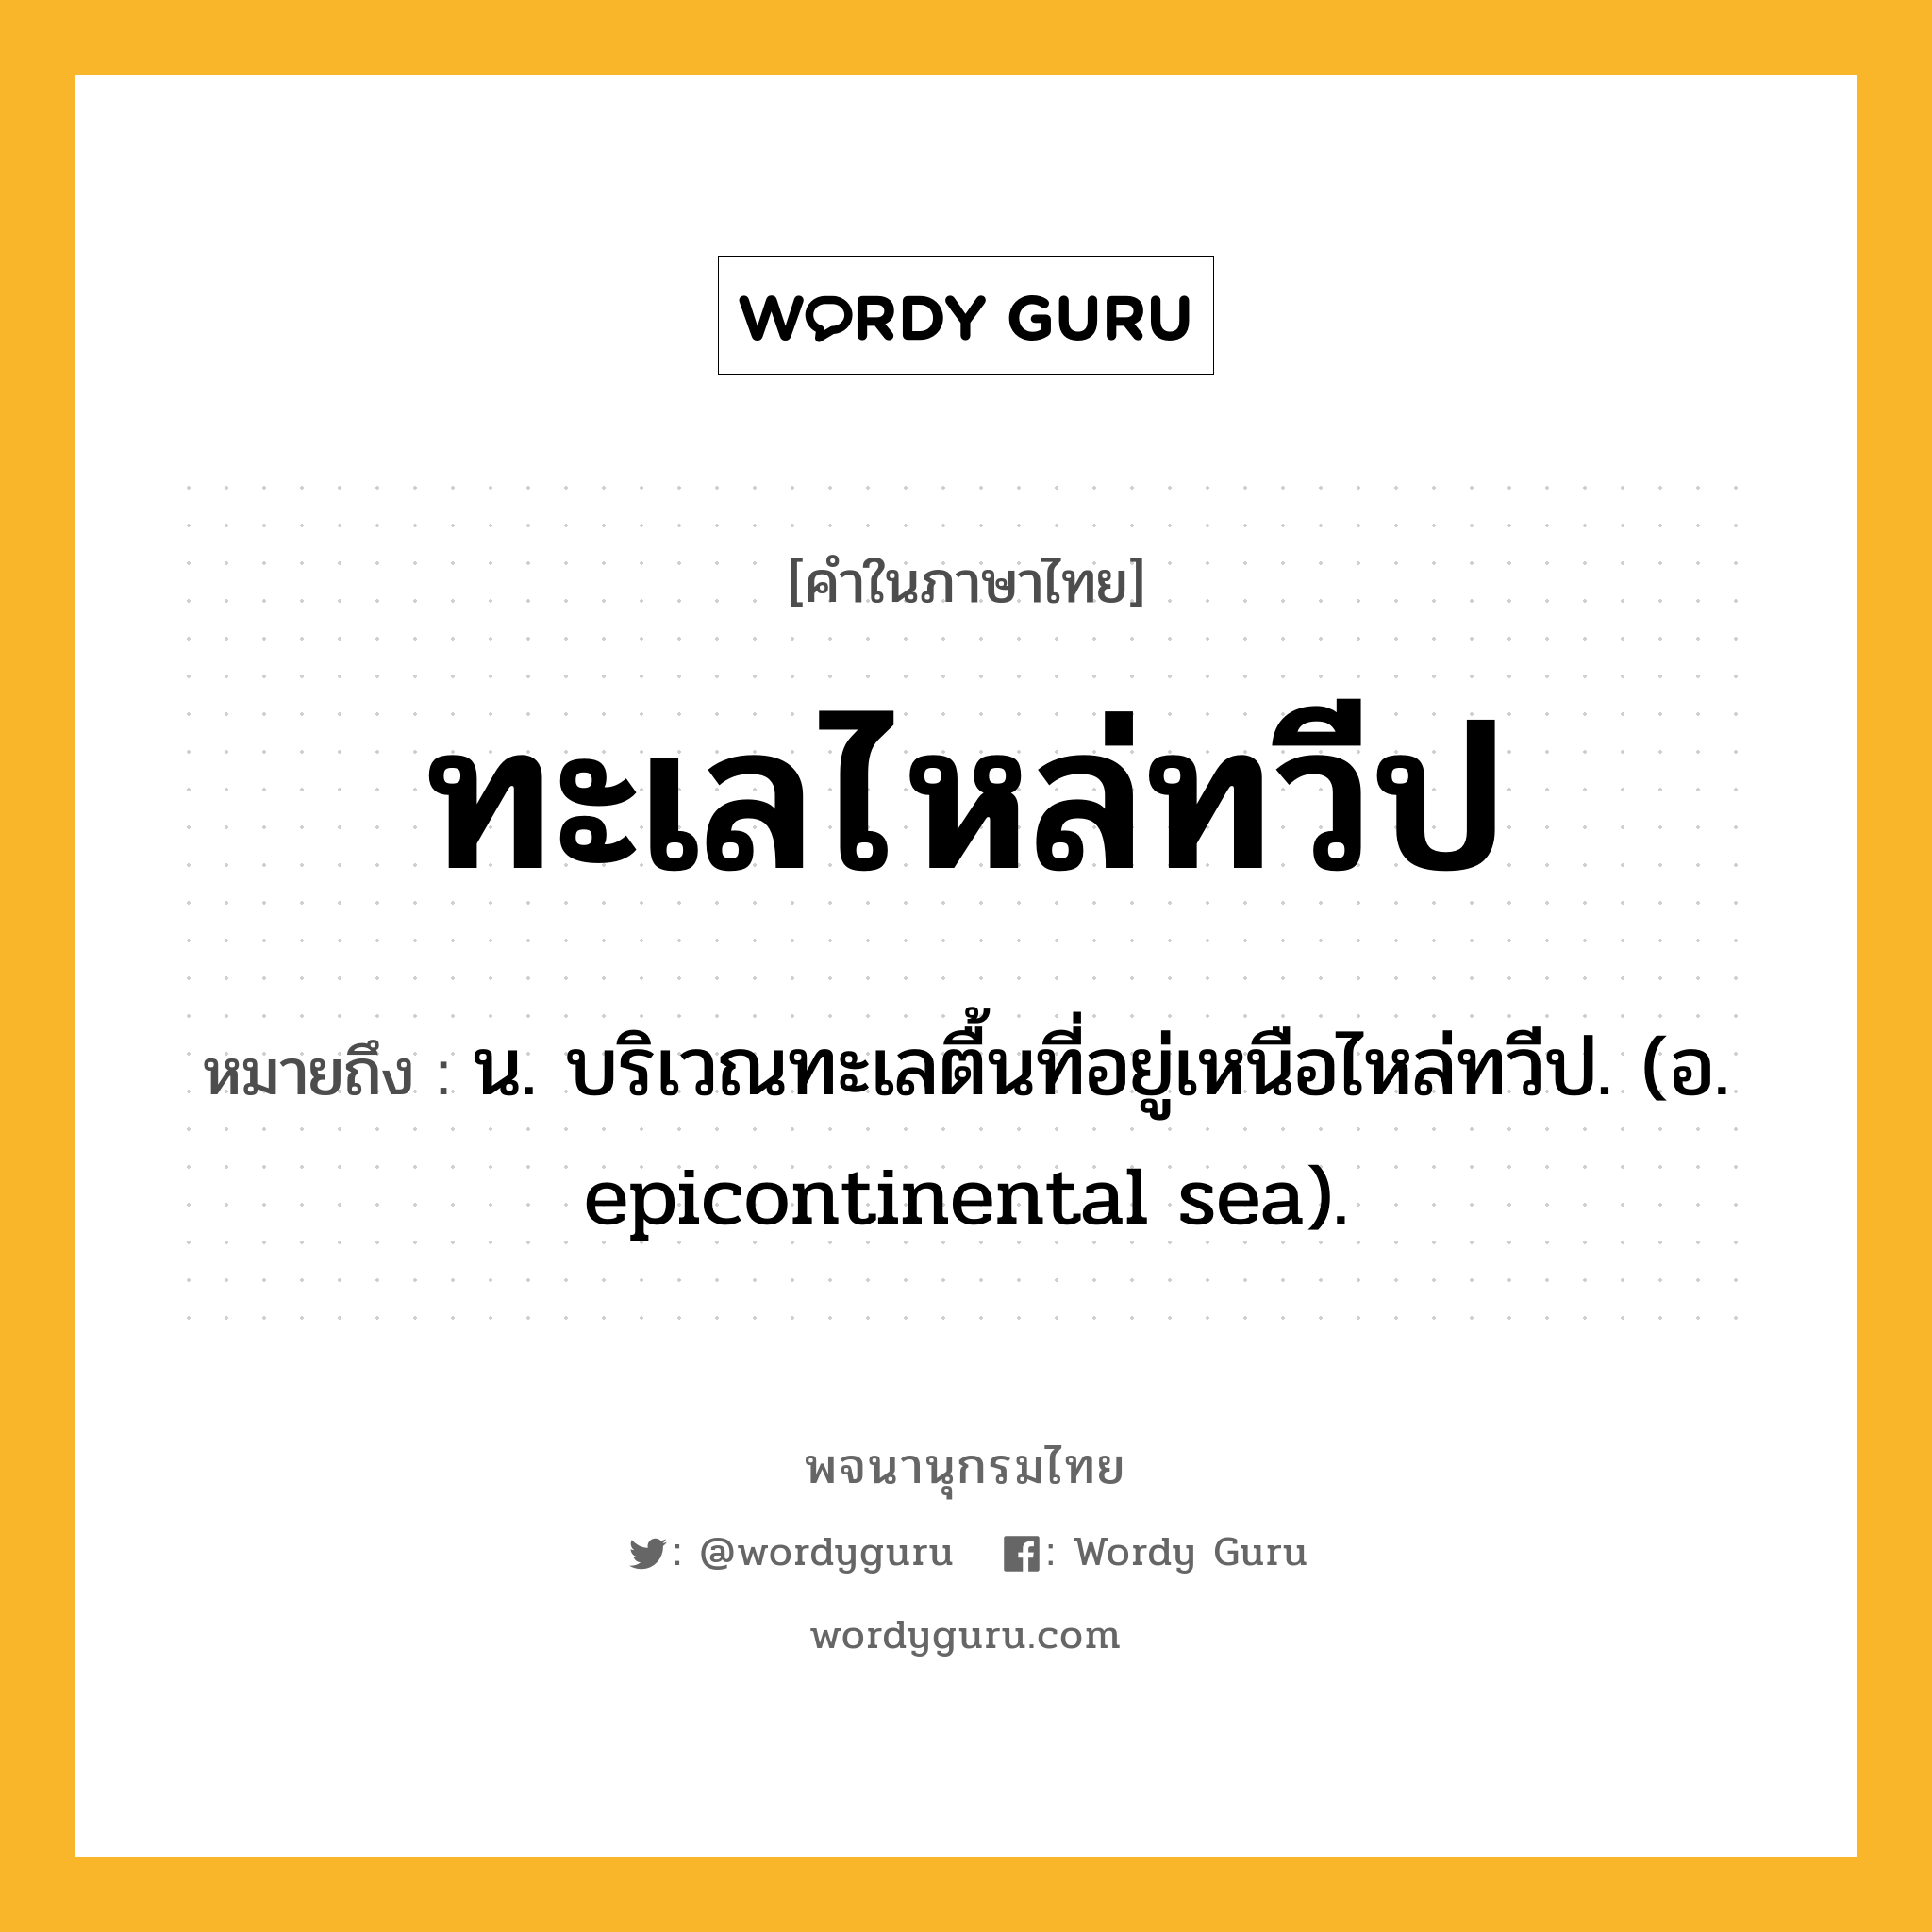 ทะเลไหล่ทวีป หมายถึงอะไร?, คำในภาษาไทย ทะเลไหล่ทวีป หมายถึง น. บริเวณทะเลตื้นที่อยู่เหนือไหล่ทวีป. (อ. epicontinental sea).